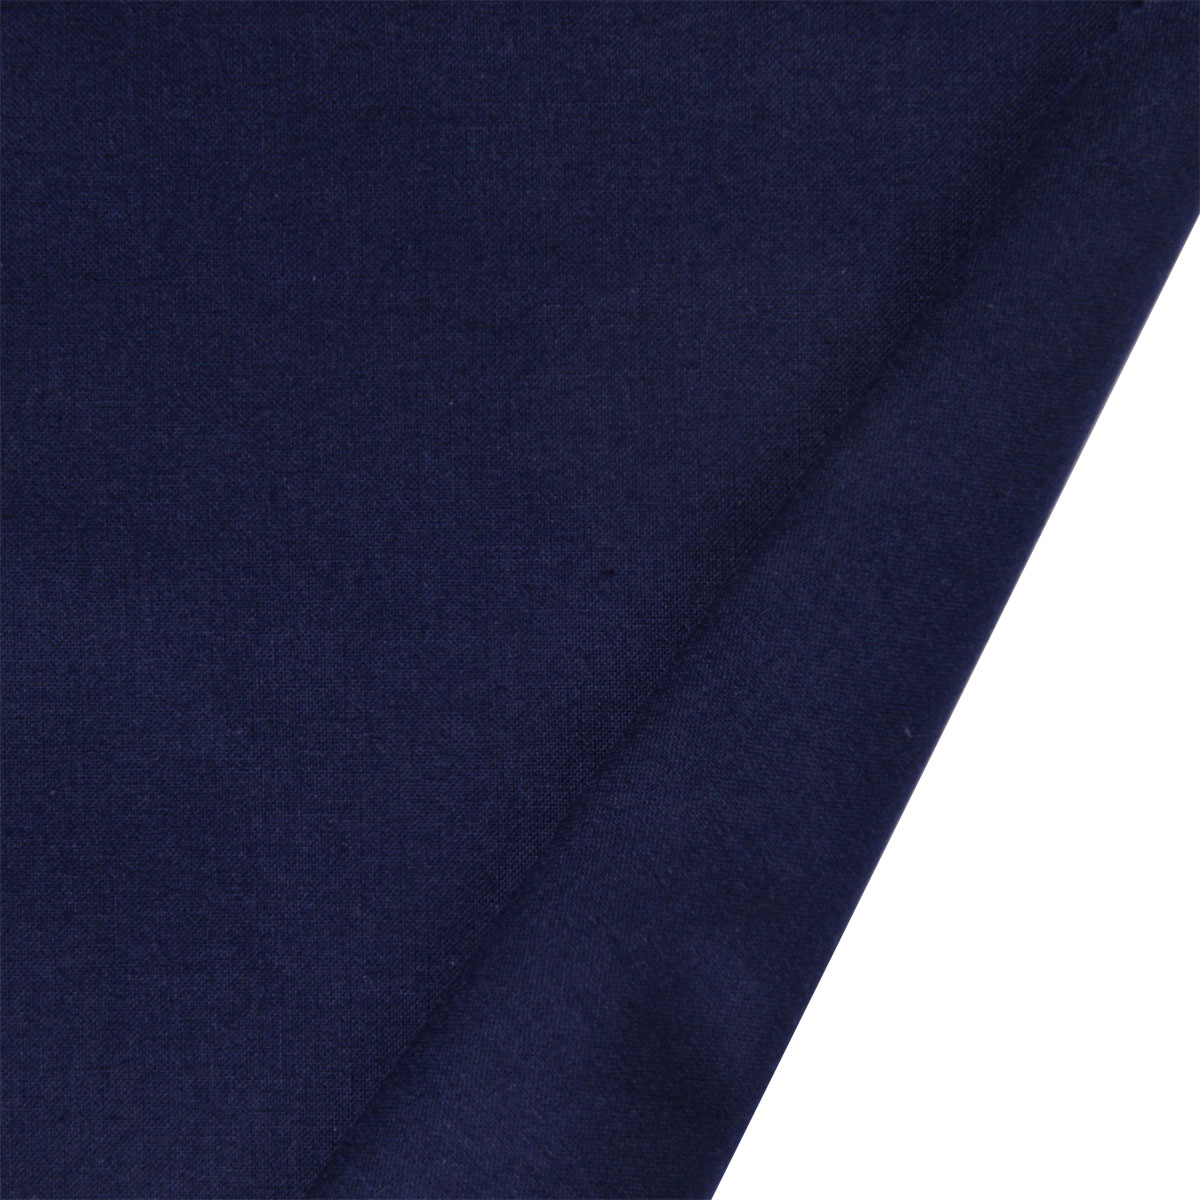 Dekostoff Freiberg dunkelblau in 1,6m Breite (METERWARE) Baumwollstoff Stoff aus 100% Baumwolle